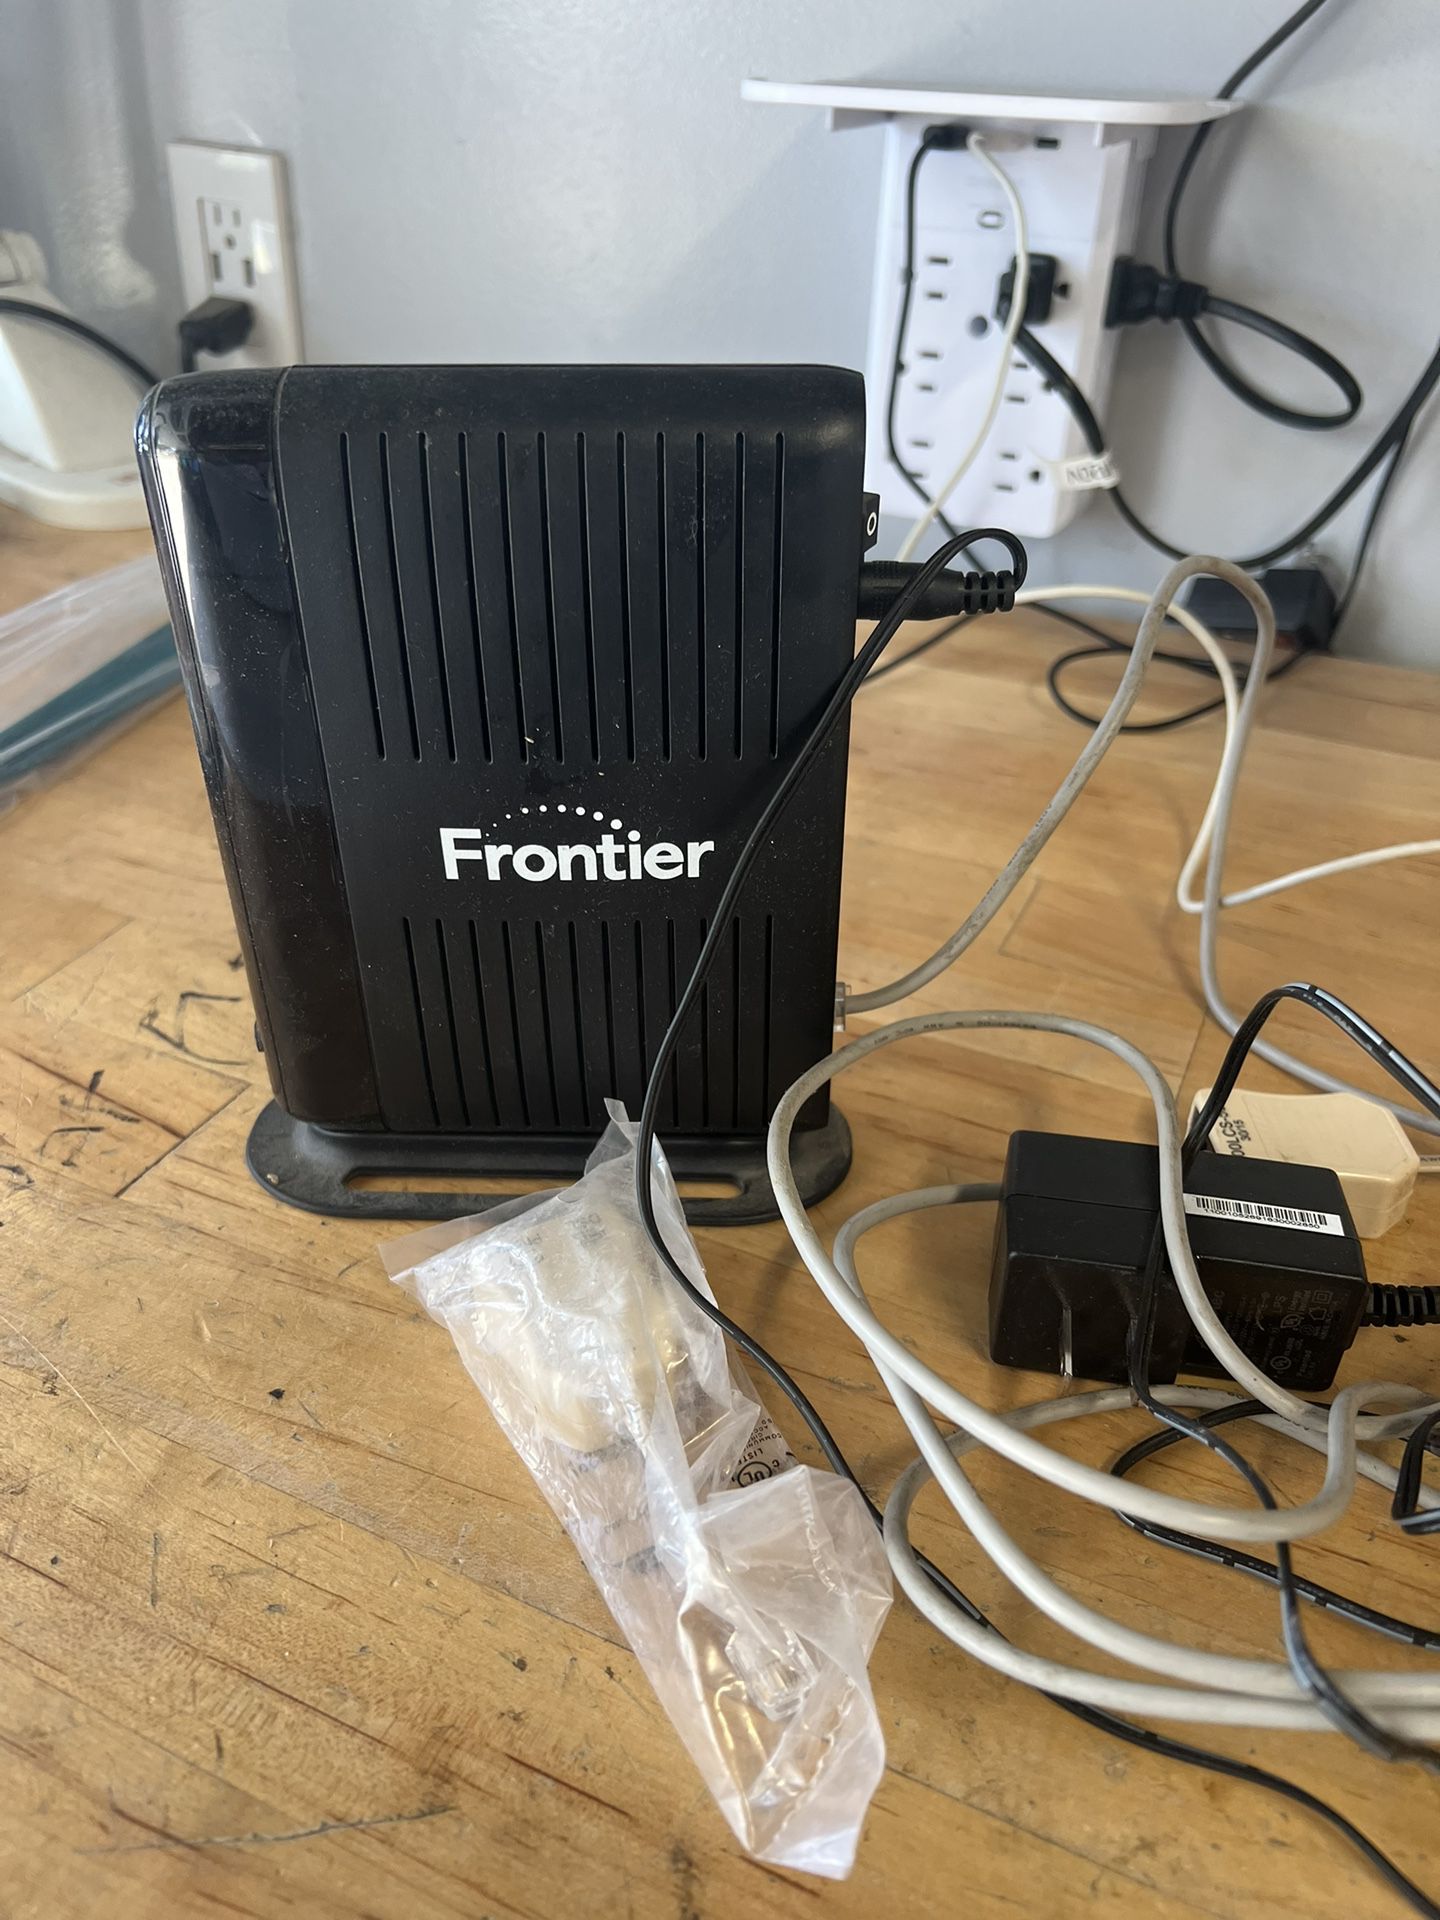 Frontier DSL Modem/Router